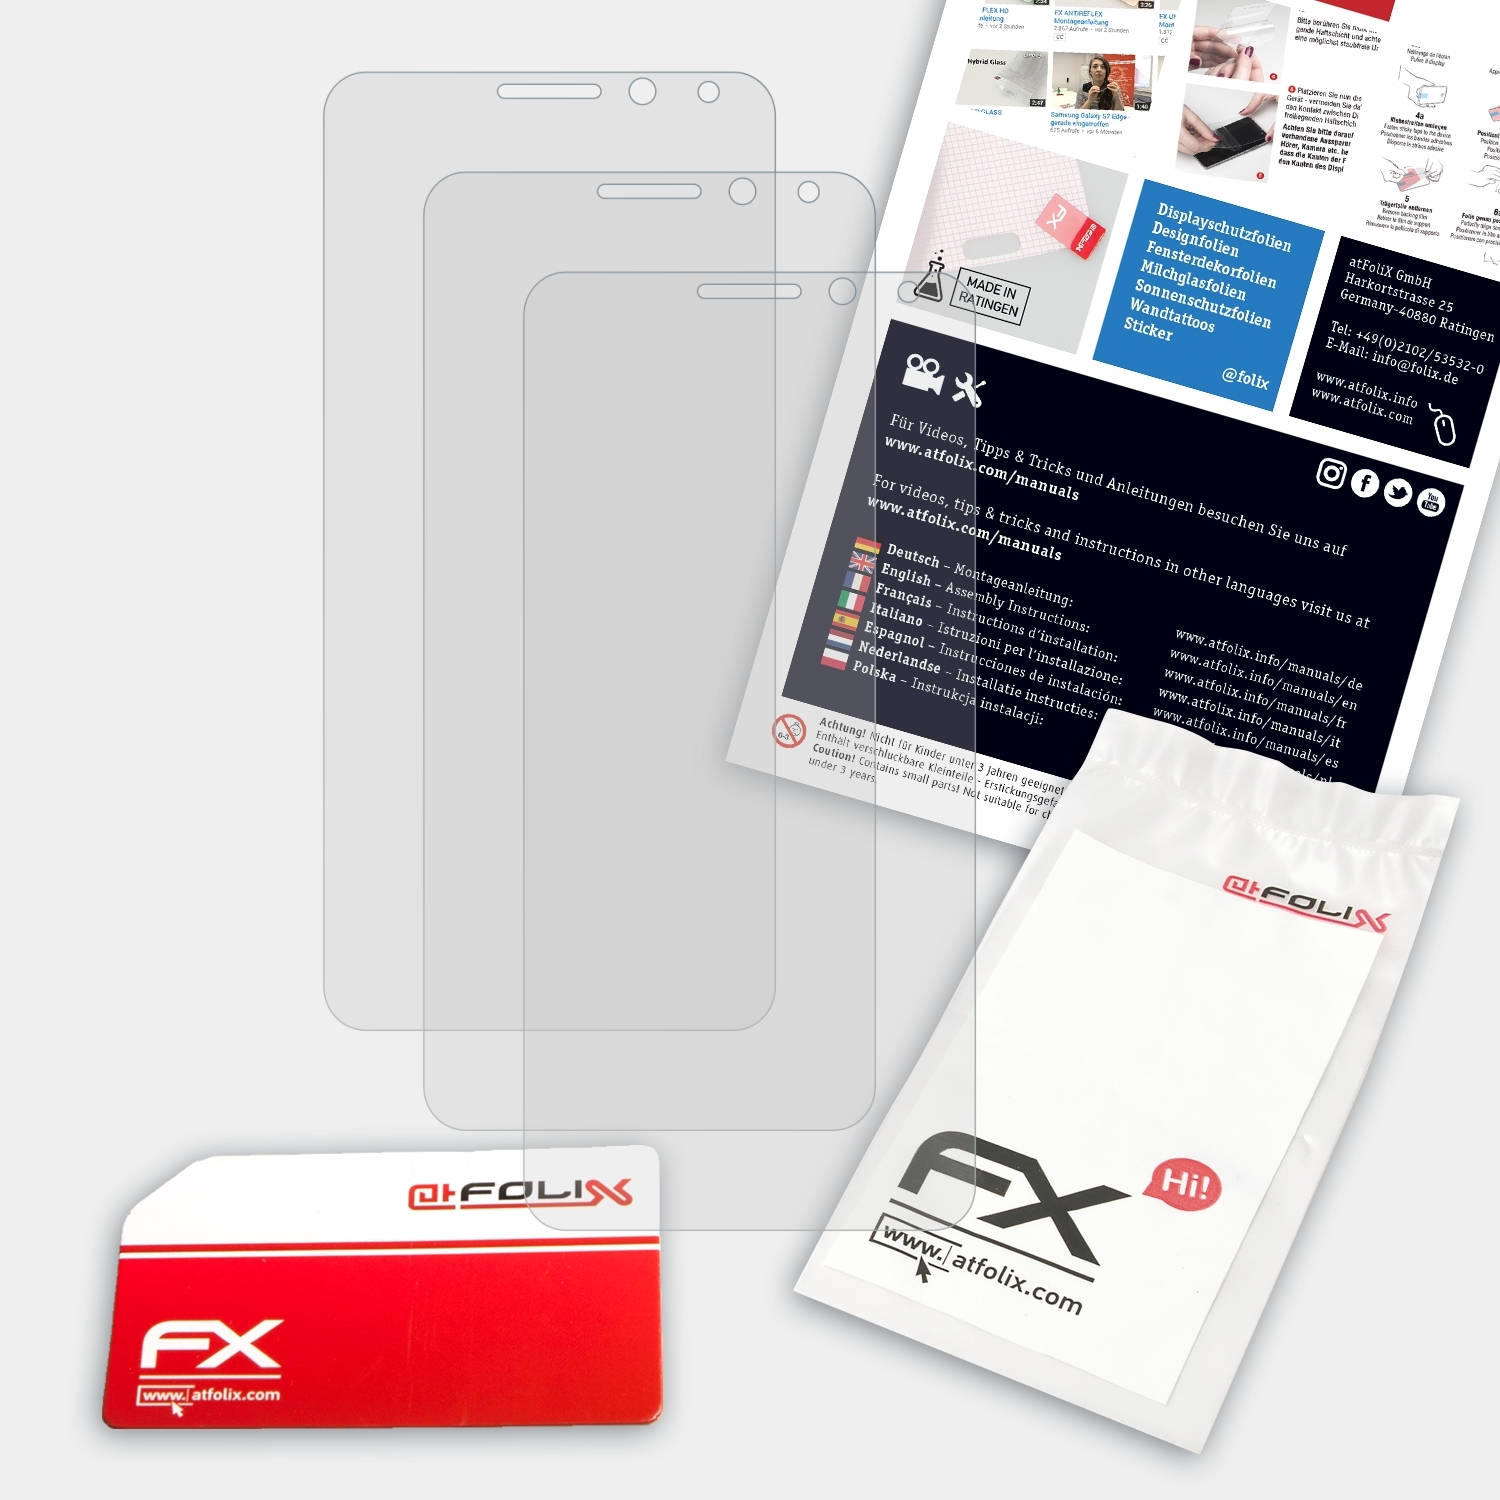 ATFOLIX 3x GM General-Mobile Displayschutz(für Plus) 5 FX-Antireflex